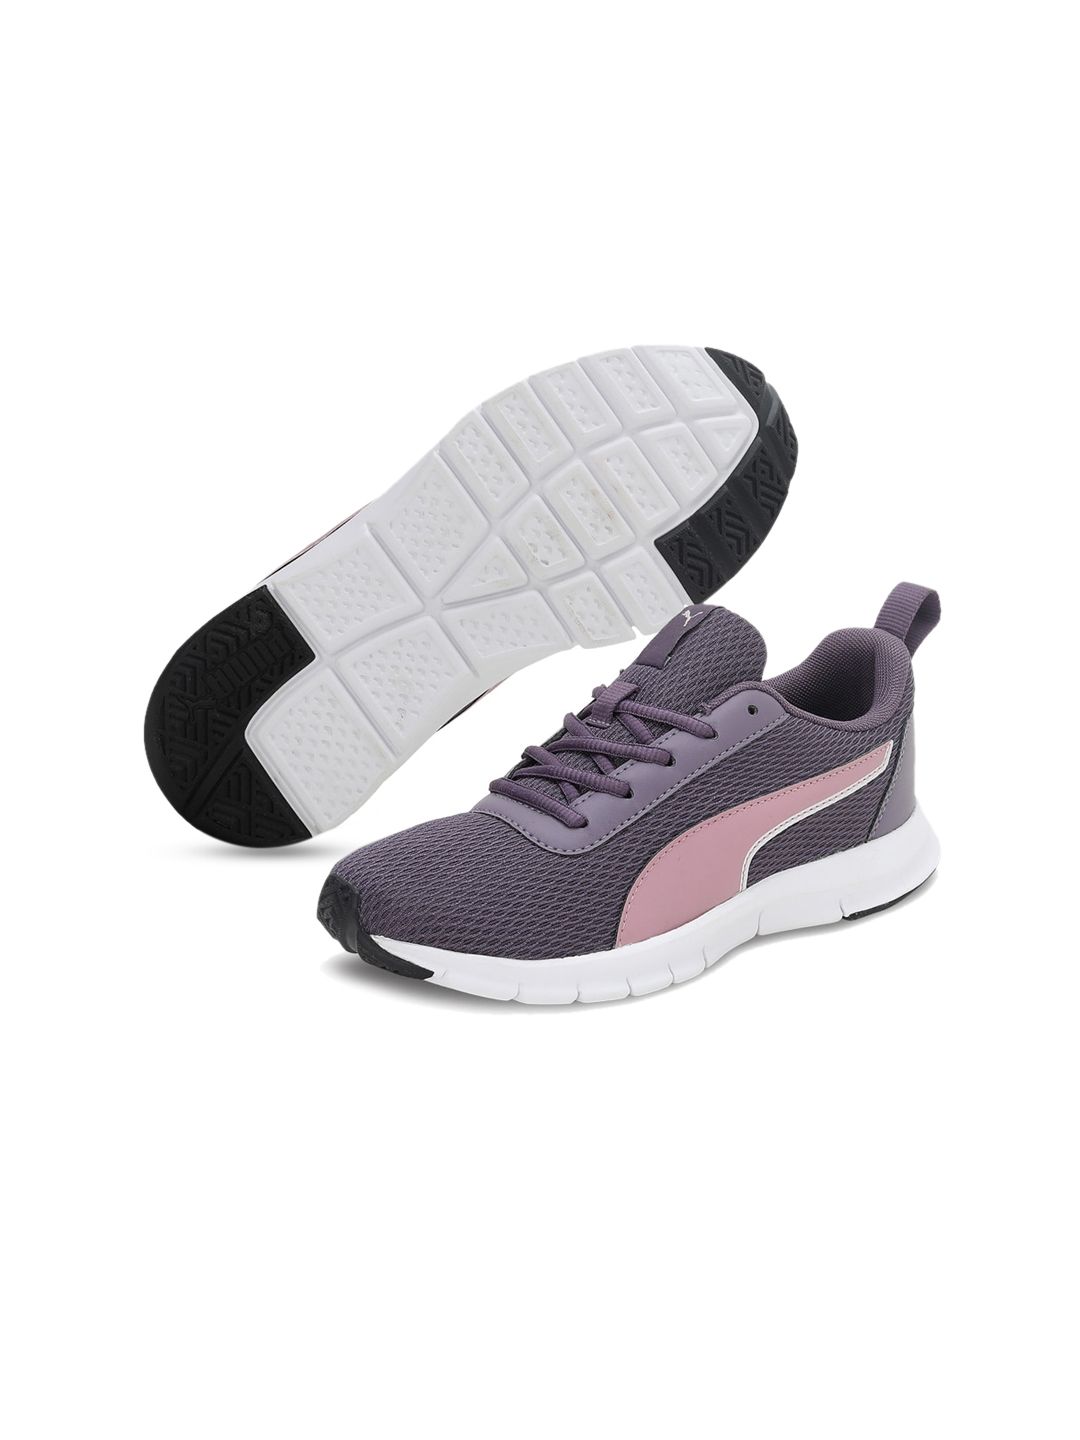 Puma Women Purple Woven Design Sneakers Price in India